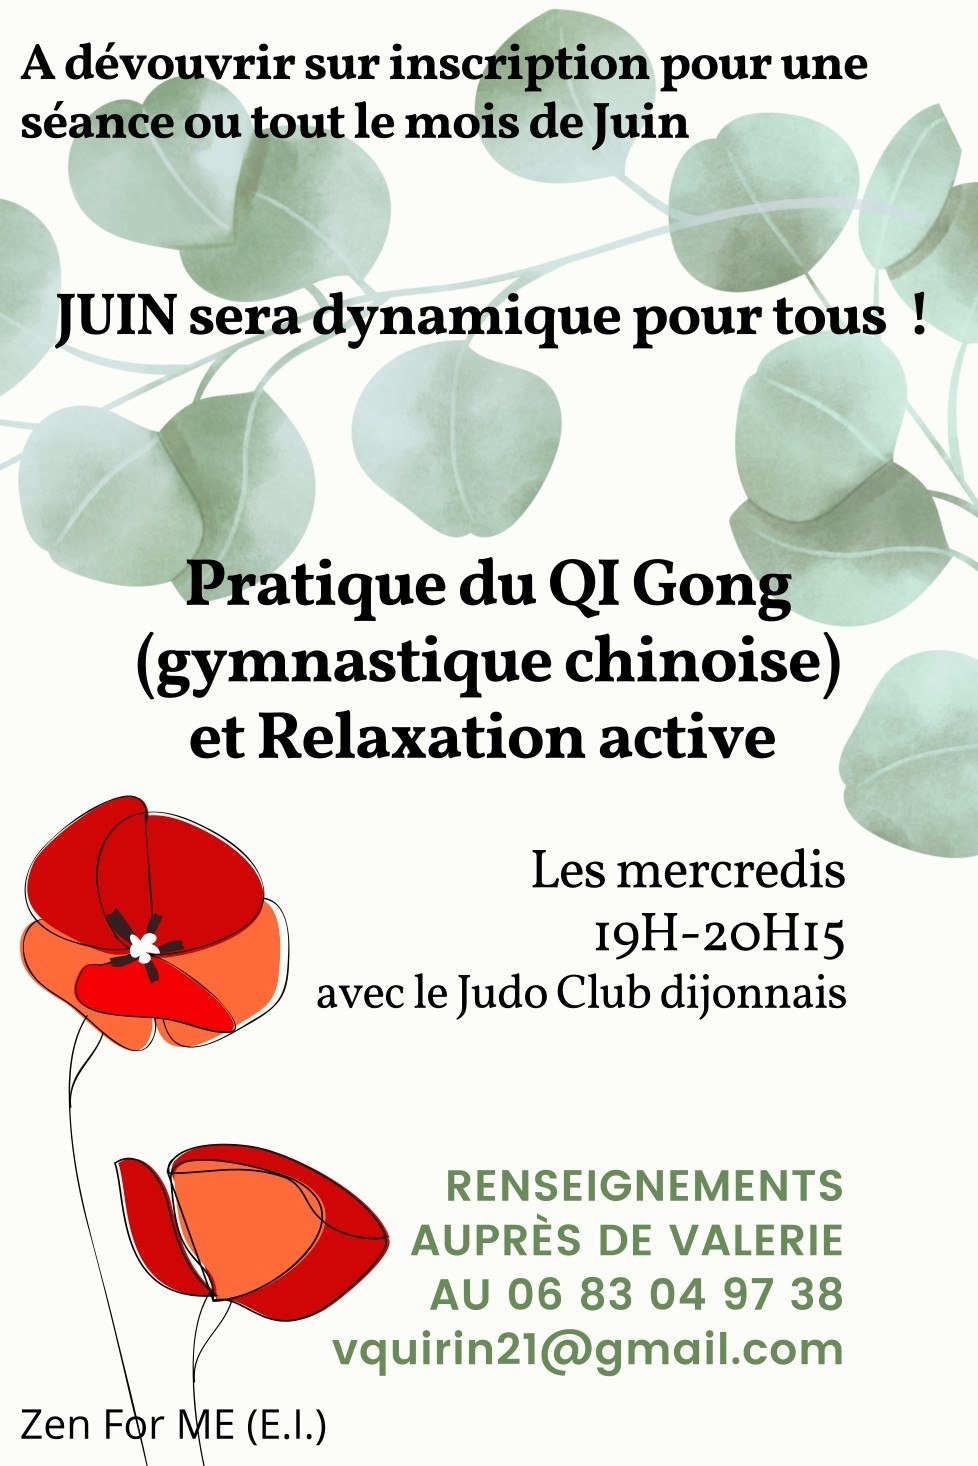 Le judo club dijonnais vous propose de pratiquer le Qi gong !